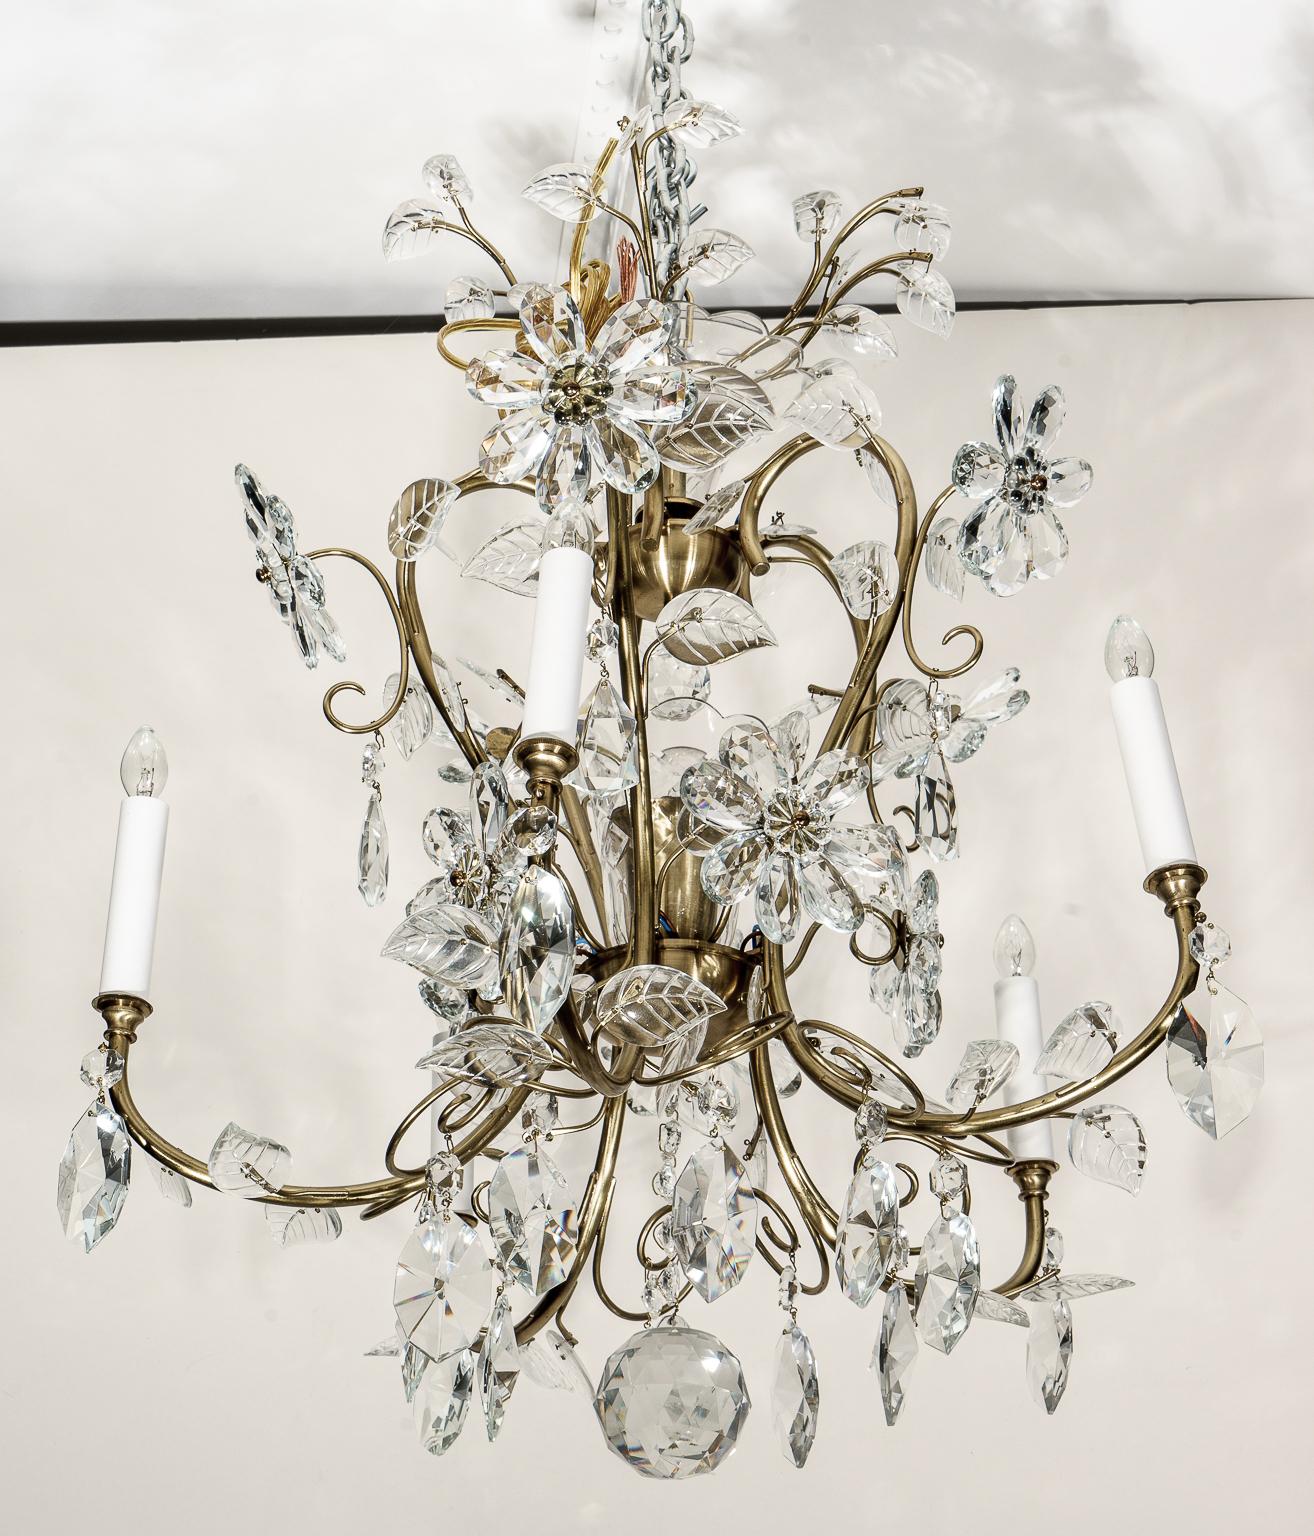 Ce lustre élégant et romantique de style Louis XV est détaillé avec des fleurs et des feuillages stylisés en cristal.

Note : La hauteur sans la chaîne est de 25,50